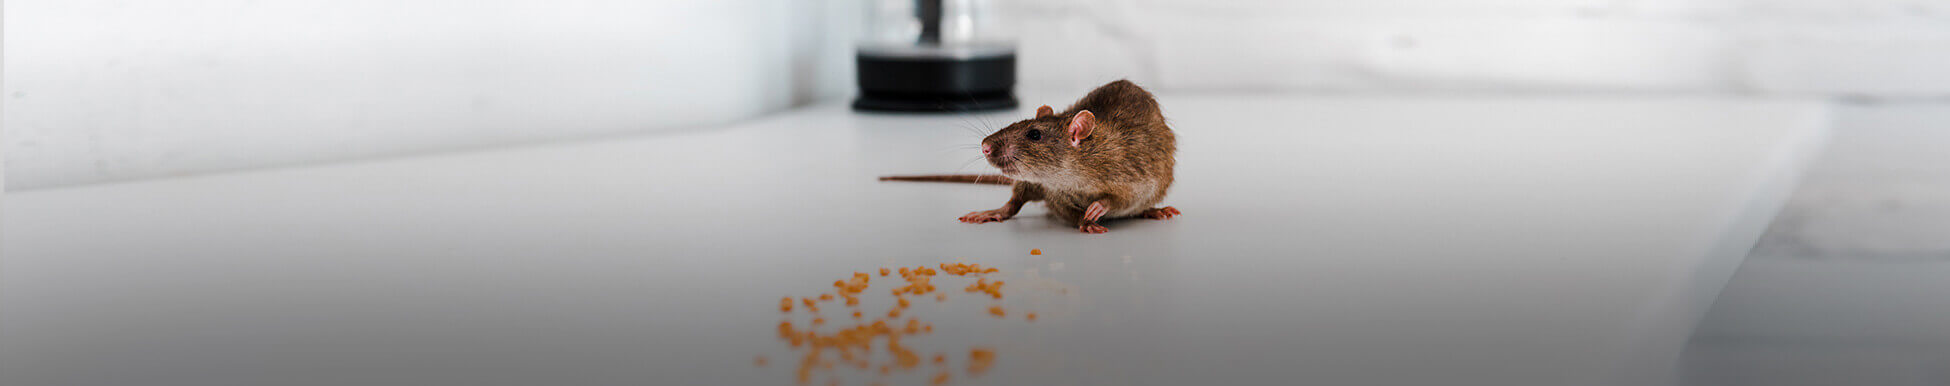 לוכד עכברים מחיר מ-300 ₪ [פריסה ארצית - היזהרו מחיקויים]☑️